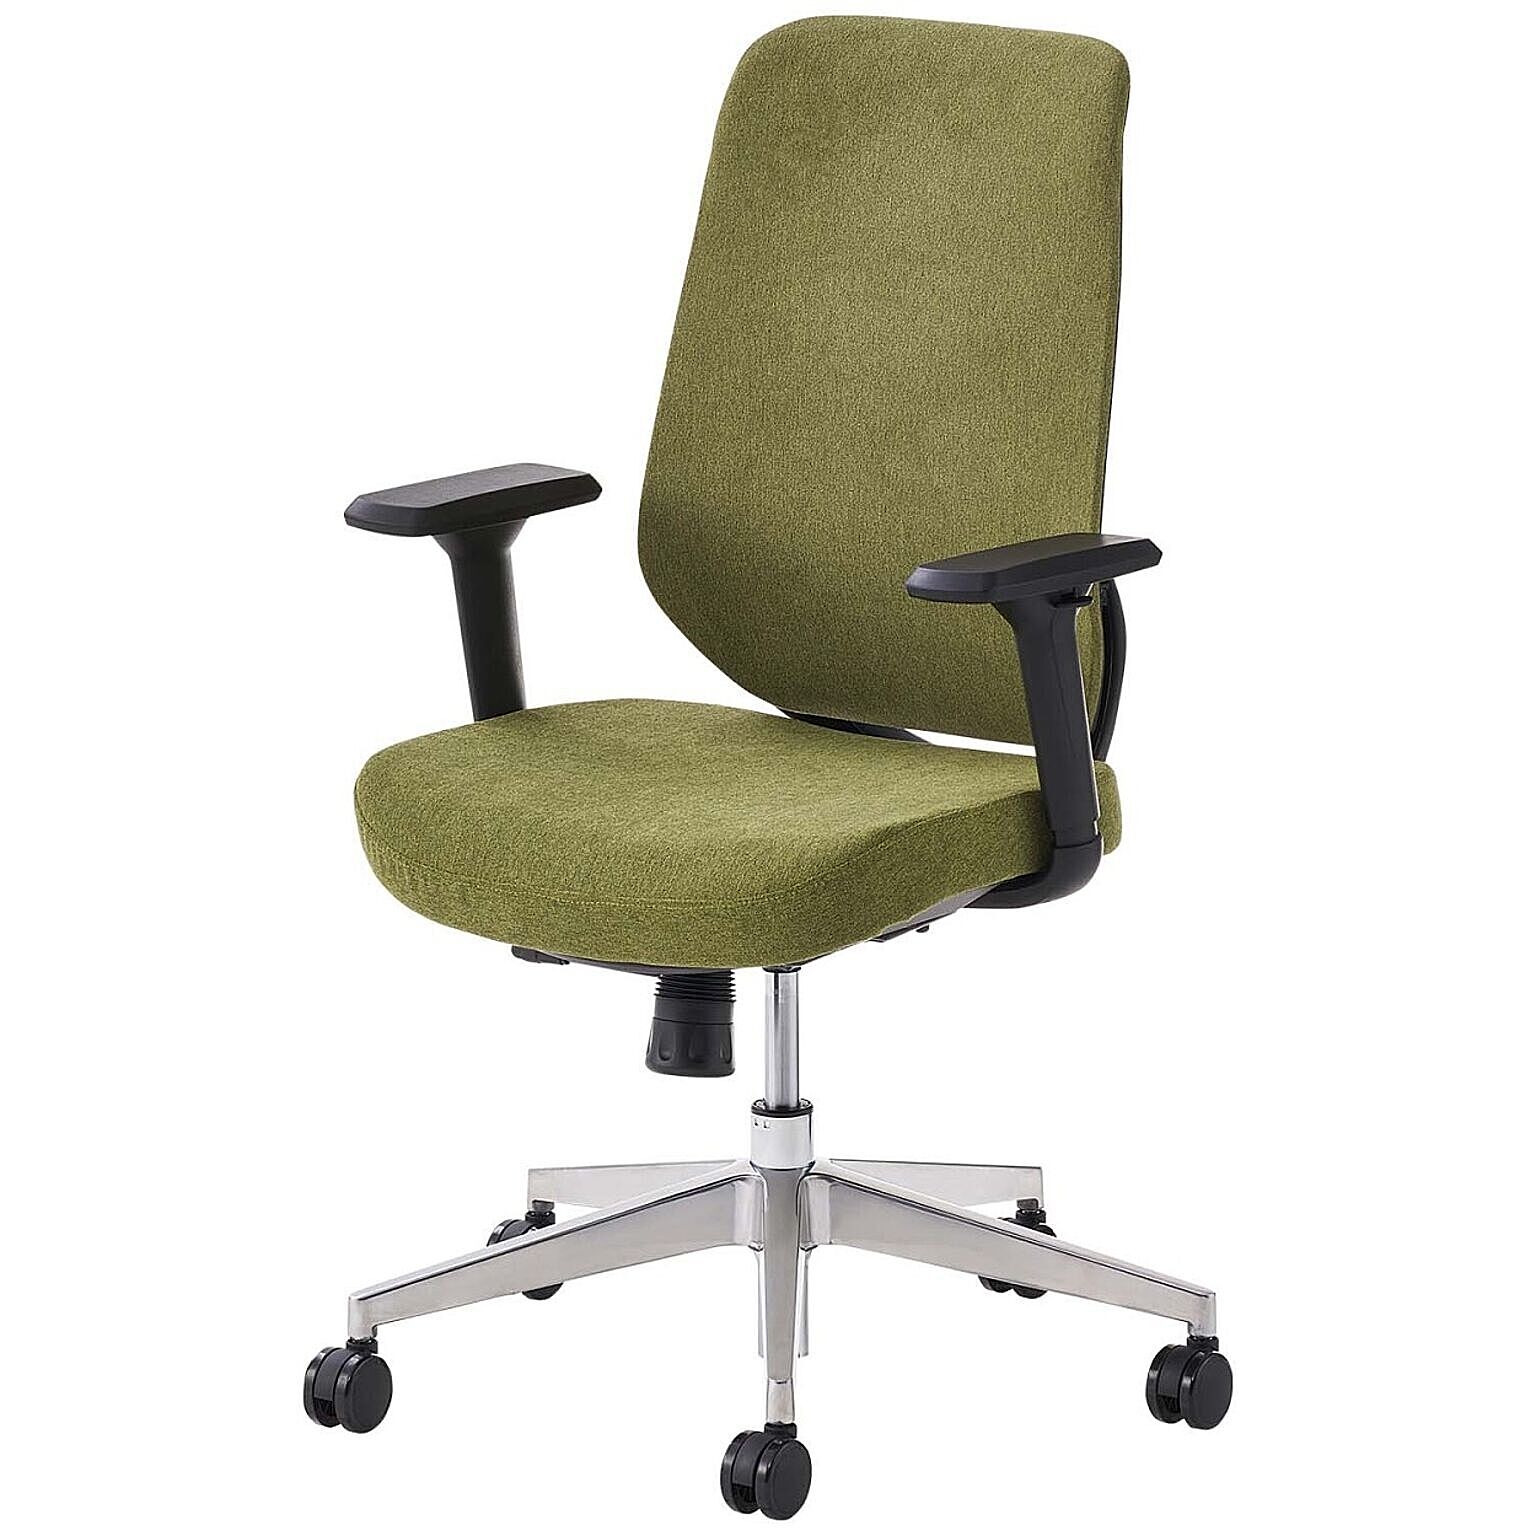 オフィスチェア YS-1 肘付き 可動肘 メッシュチェア/布張りチェア ランバーサポート 人間工学 椅子